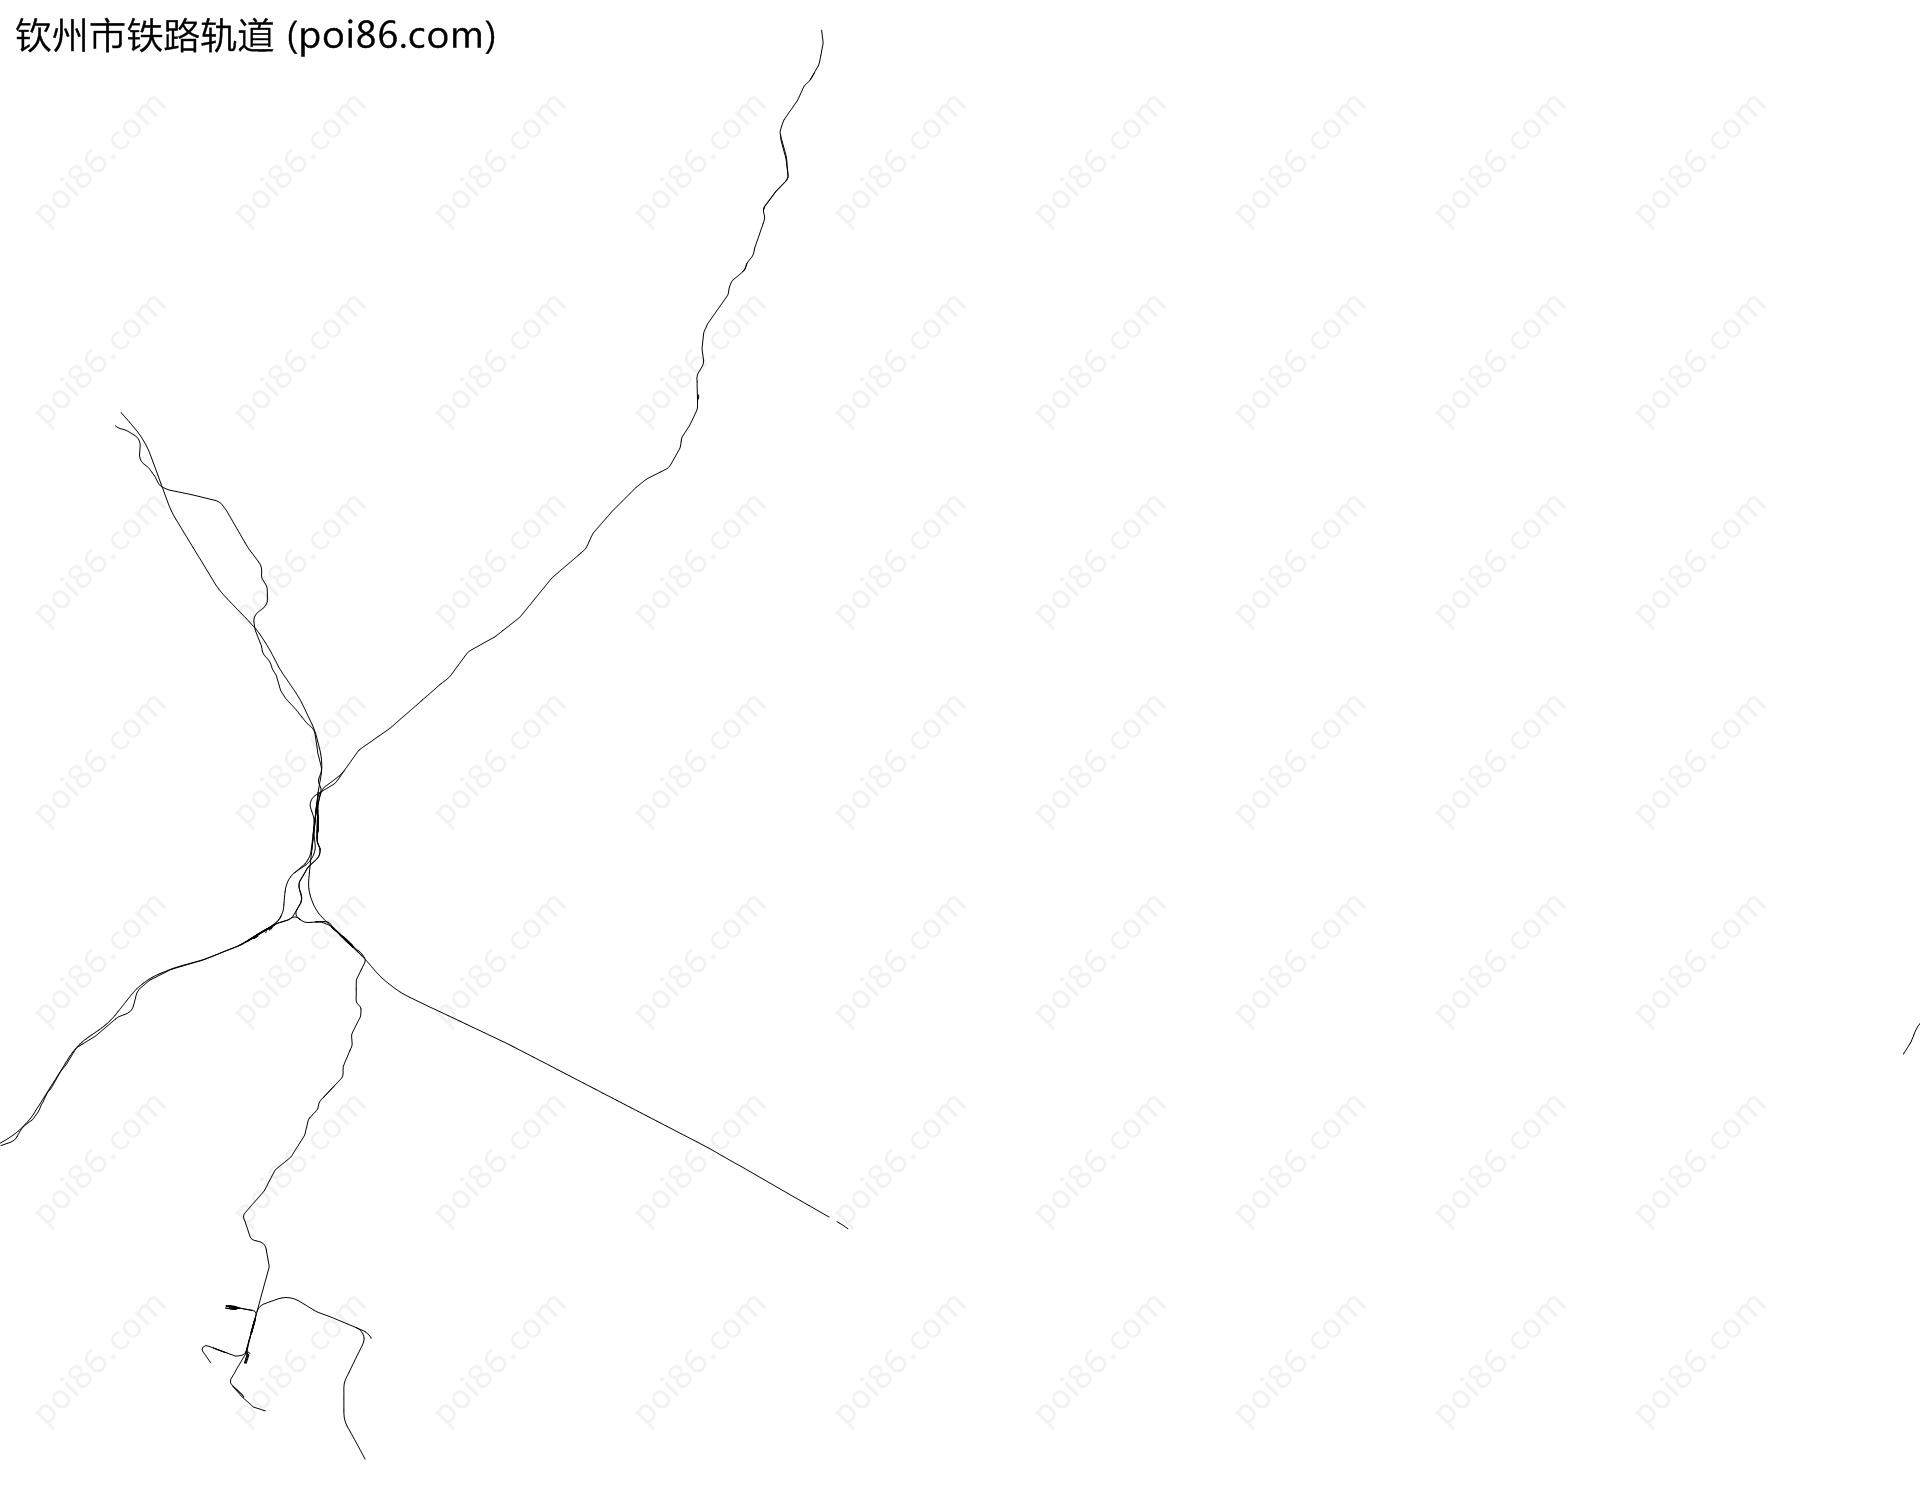 钦州市铁路轨道地图